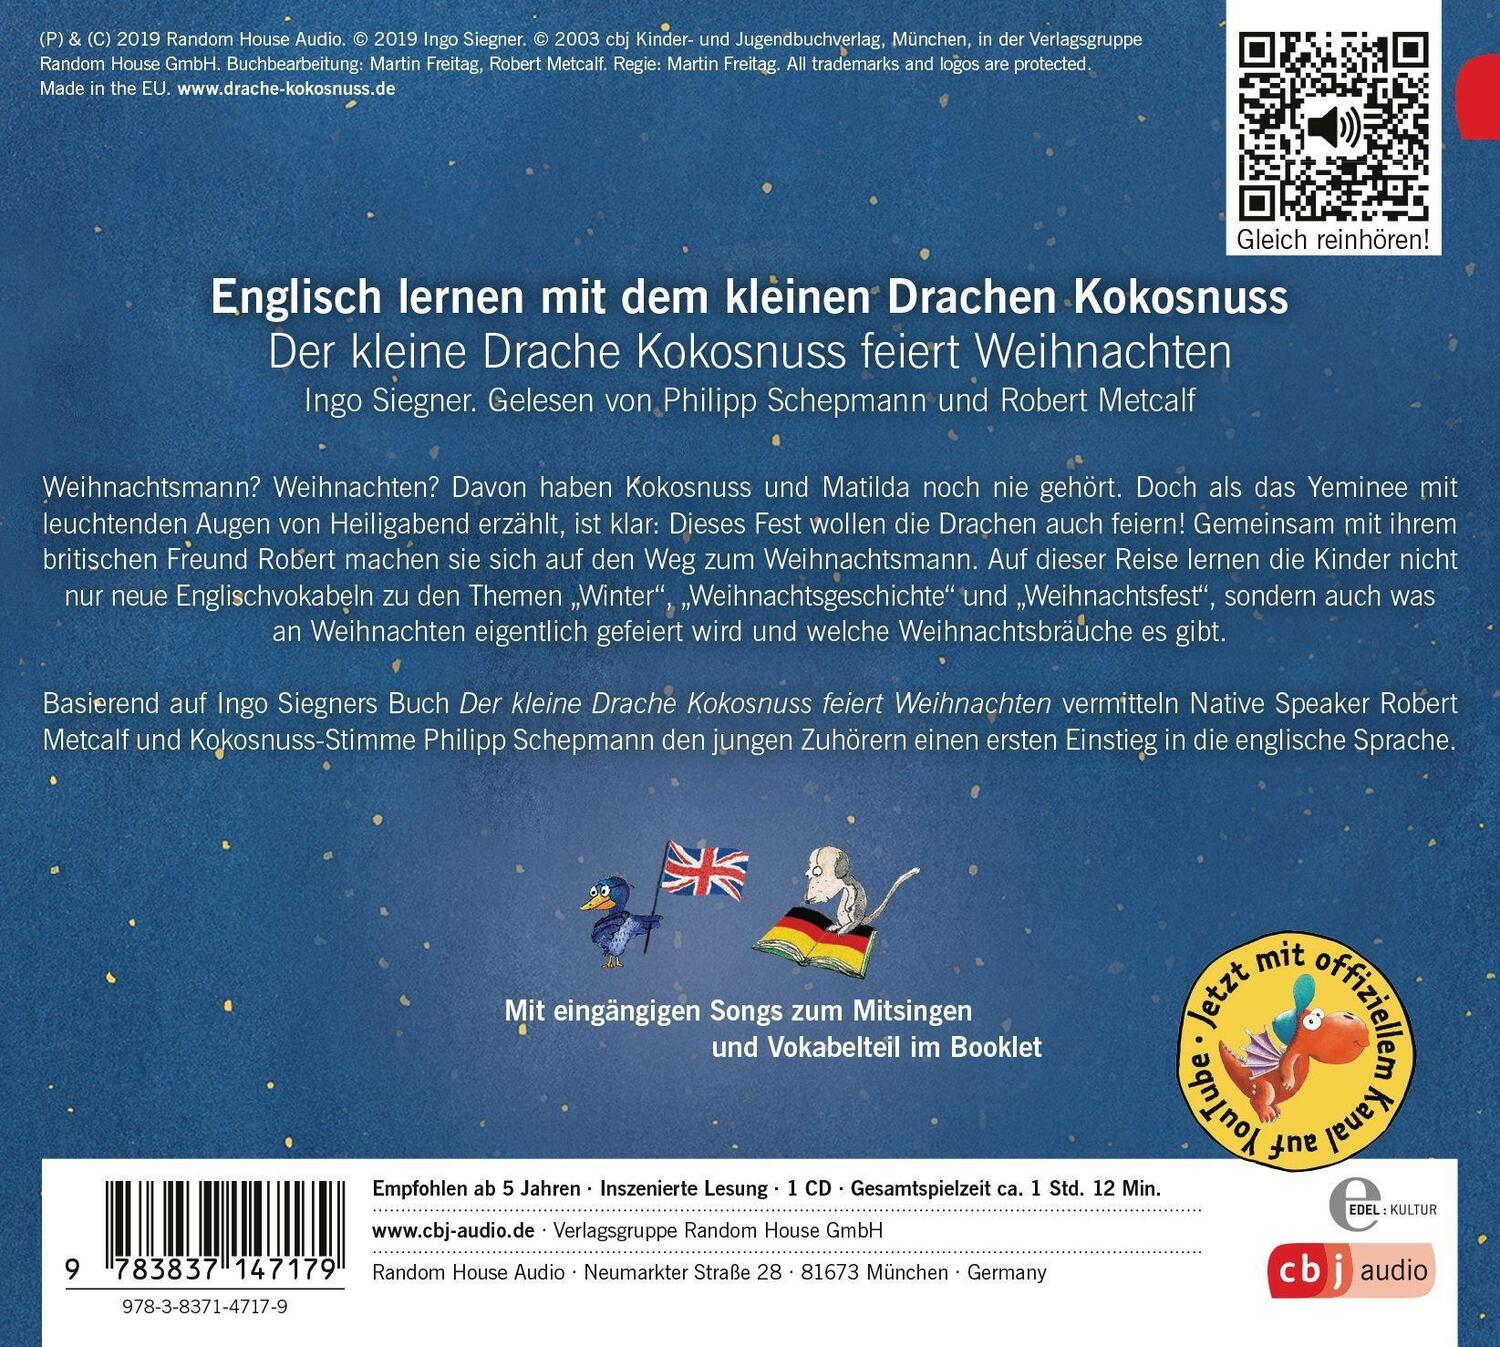 Bild: 9783837147179 | Der kleine Drache Kokosnuss feiert Weihnachten | Ingo Siegner | CD